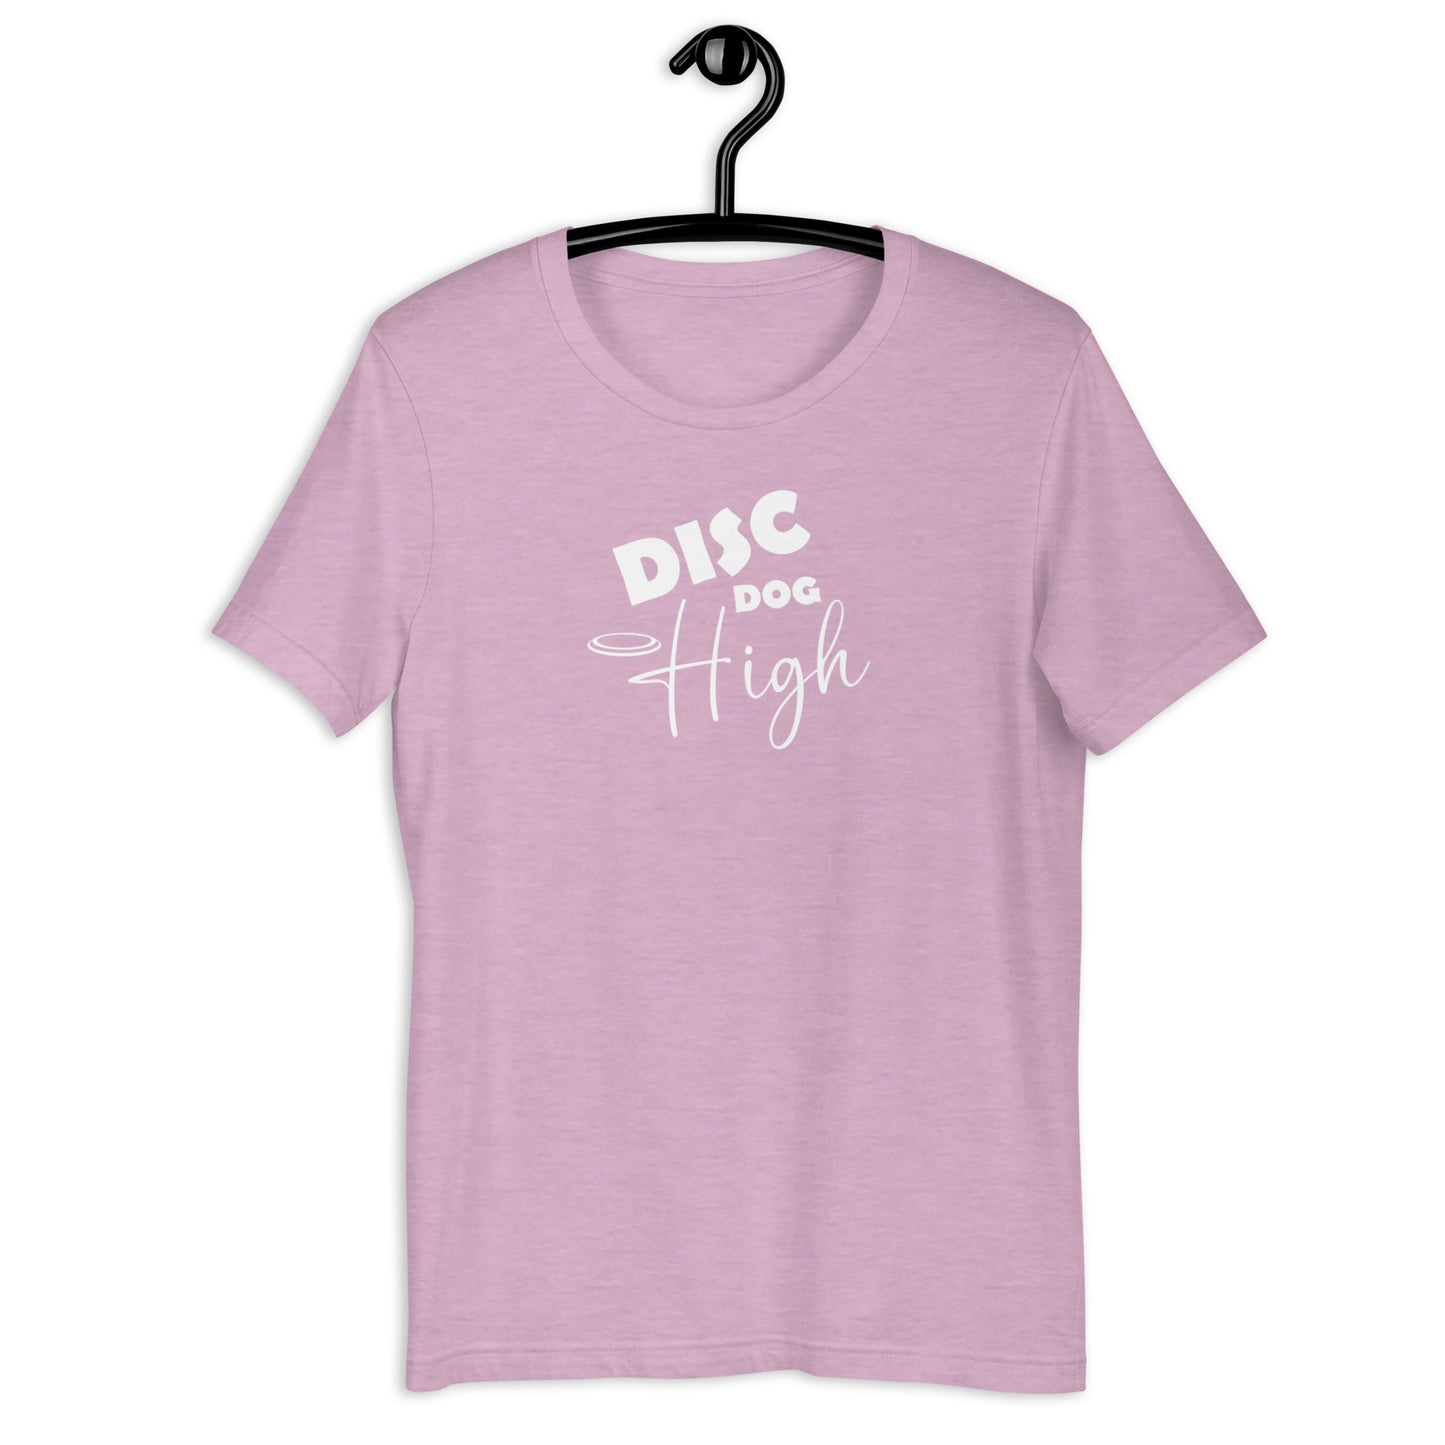 DISC DOG HIGH - Unisex t-shirt